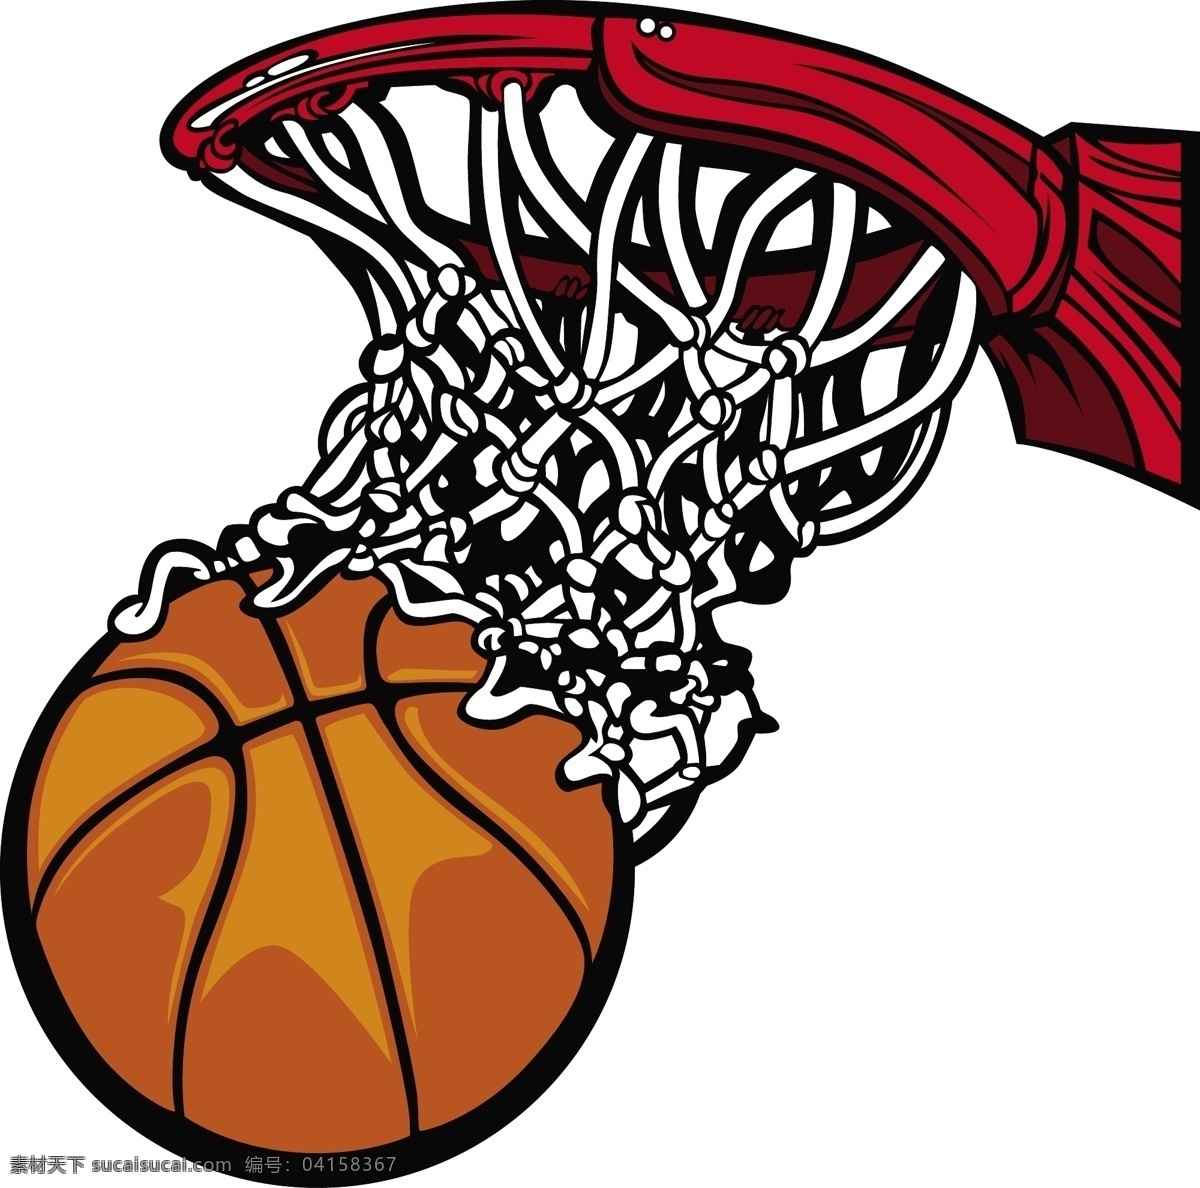 篮球 手绘篮球 cba 篮球运动 nba 球篮 basketball 体育运动 矢量 生活百科 体育用品